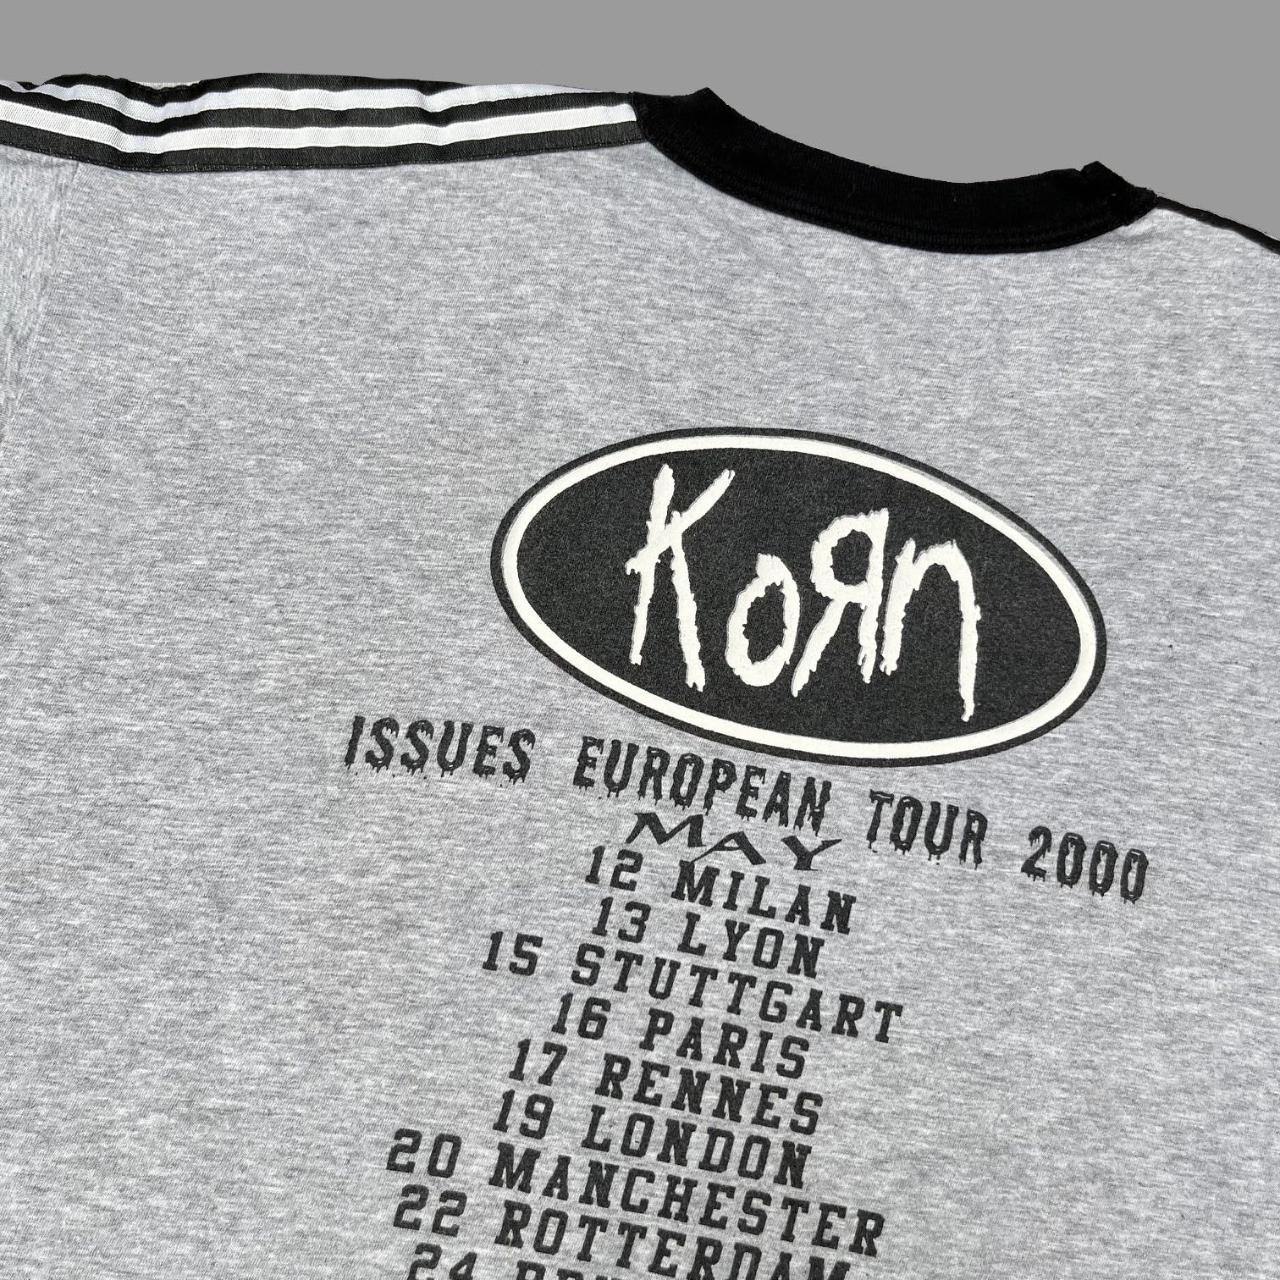 korn tour dates 2000